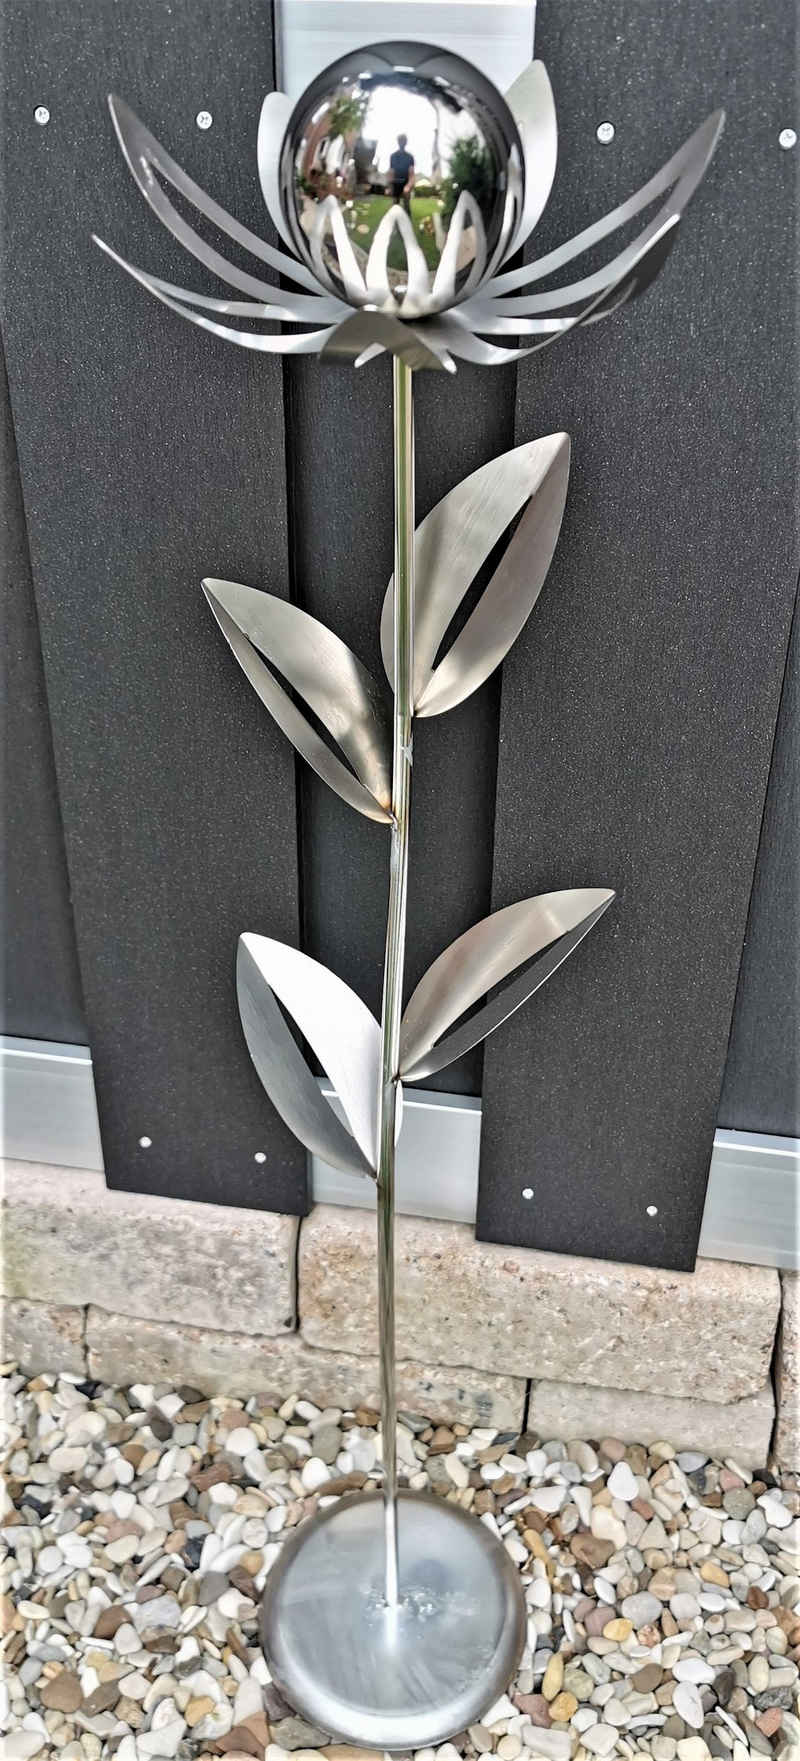 Jürgen Bocker - Gartenambiente Gartenstecker Blume Paris Edelstahl matt 77 cm mit Kugel und Standfuß